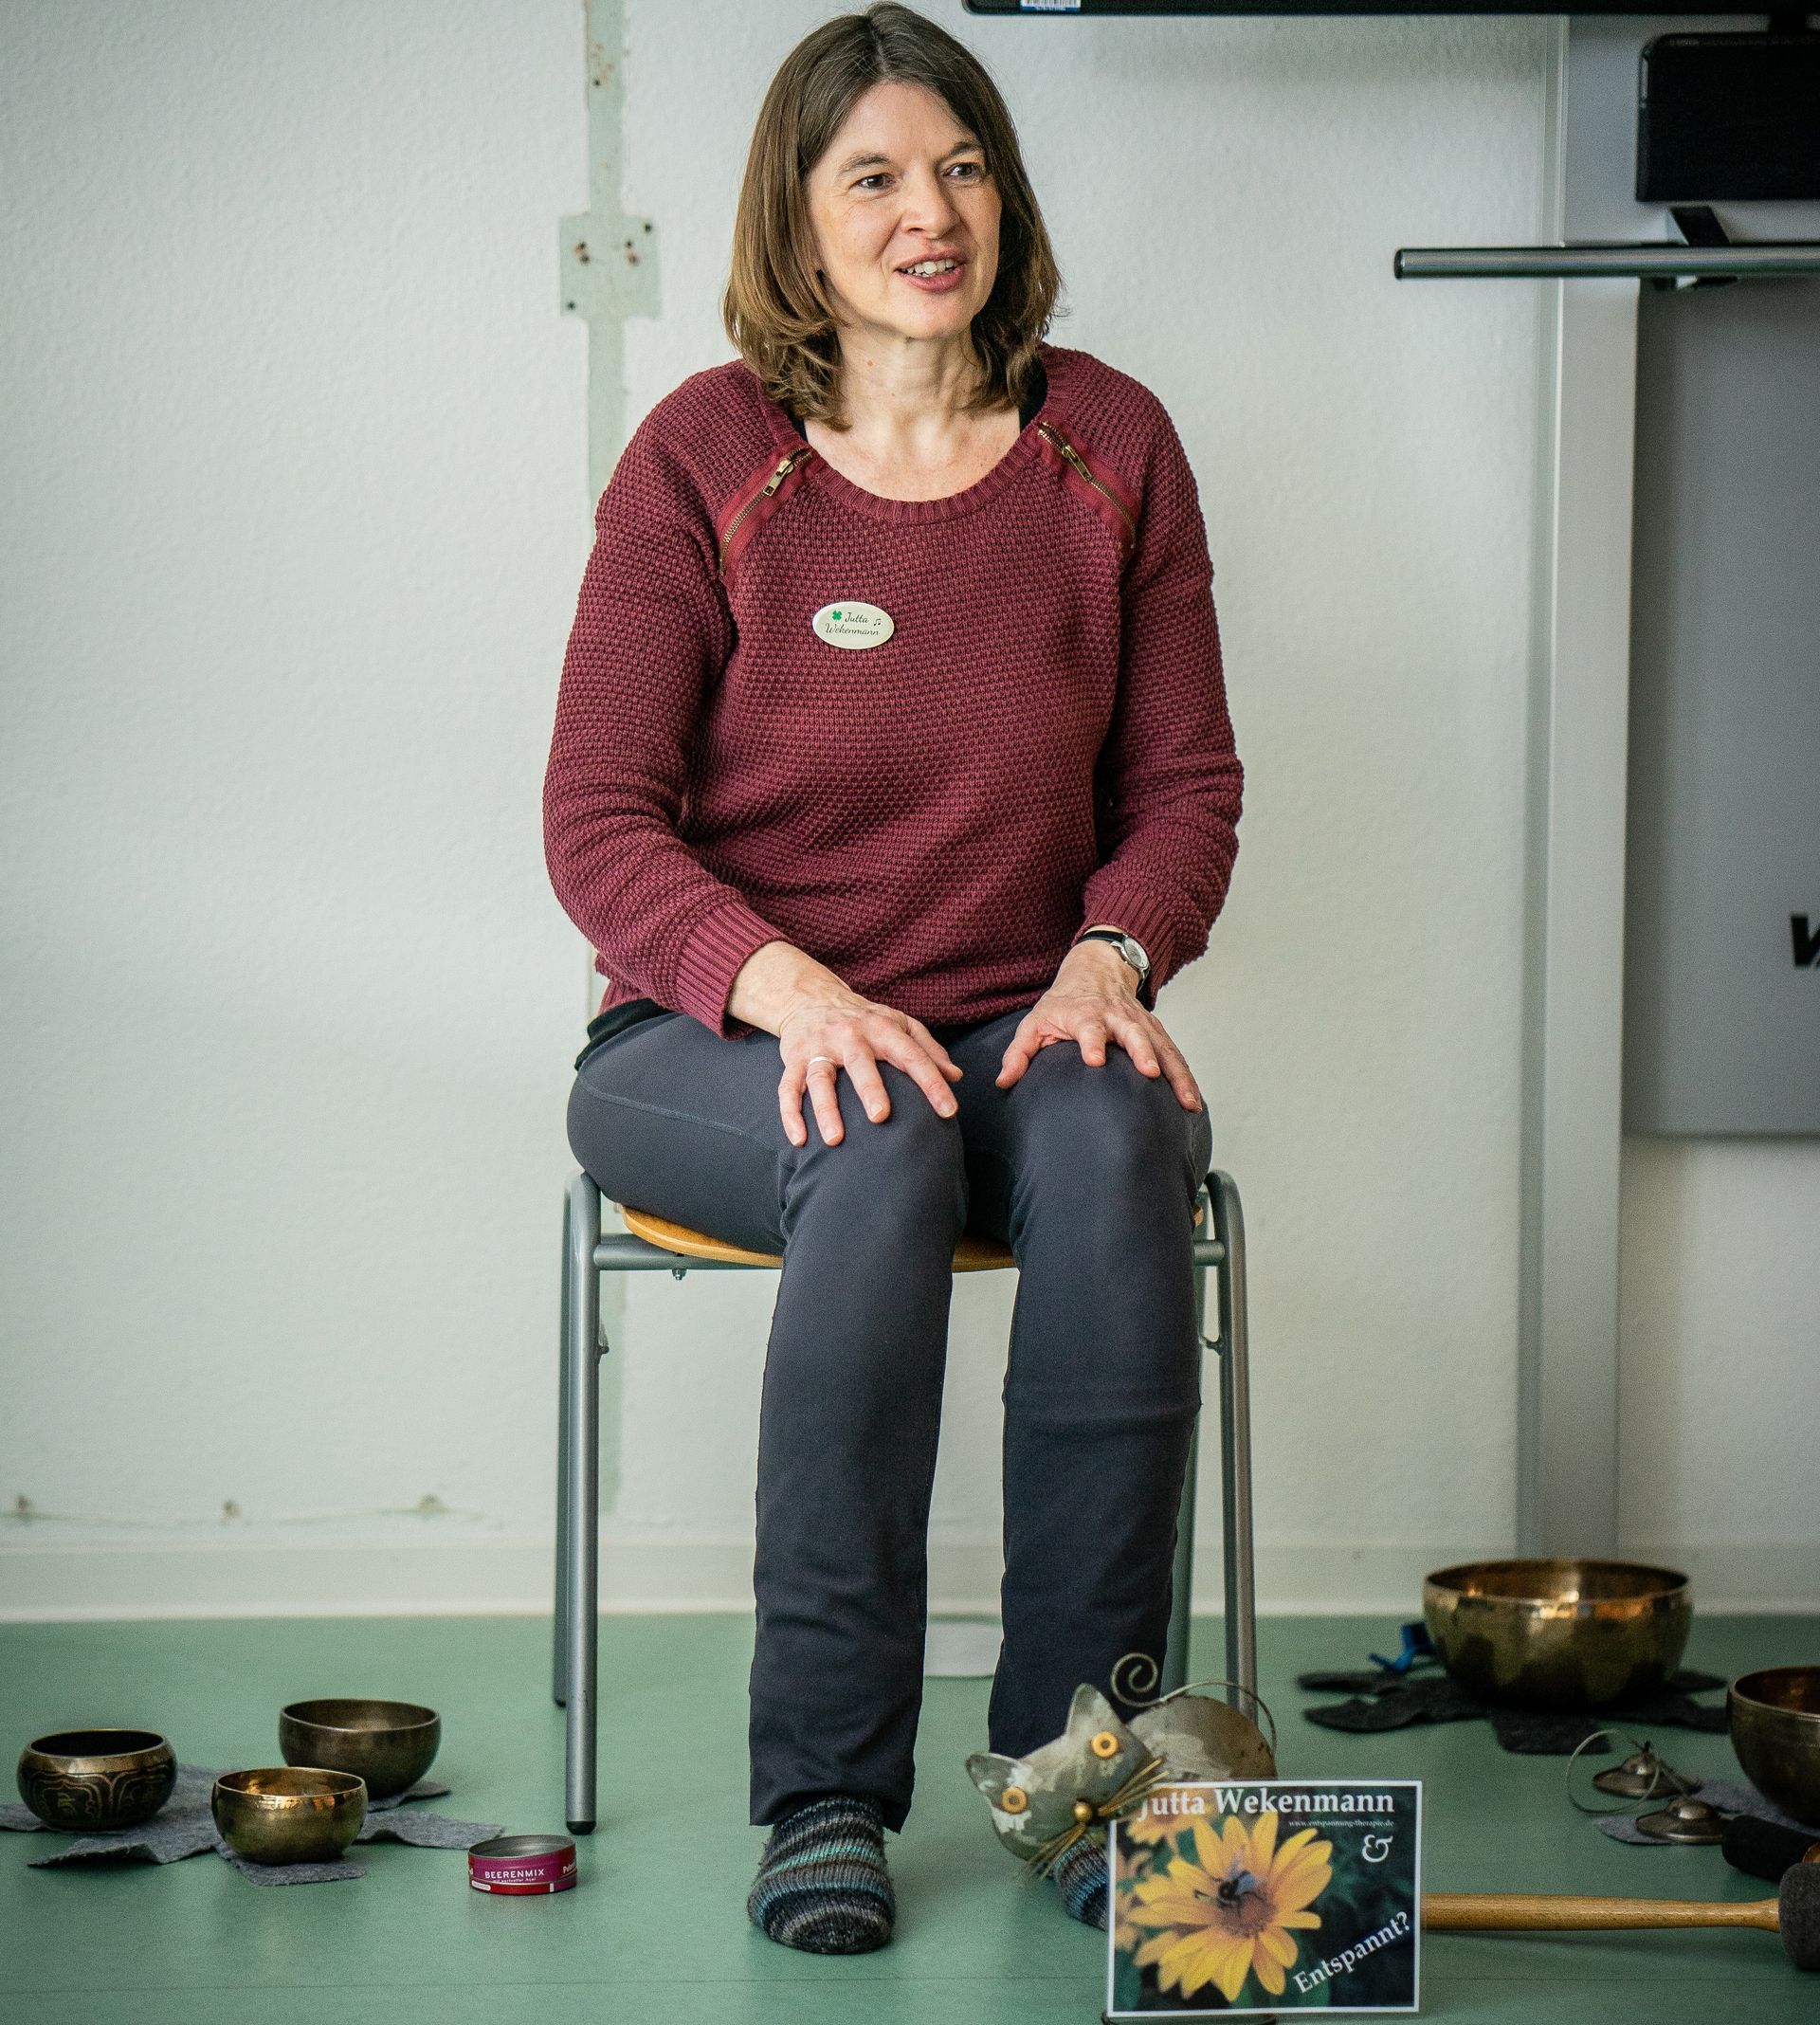 Jutta Wekenmann, Entspannungstherapie und Psychotherapie, Tübingen, Reutlingen, Rottenburg